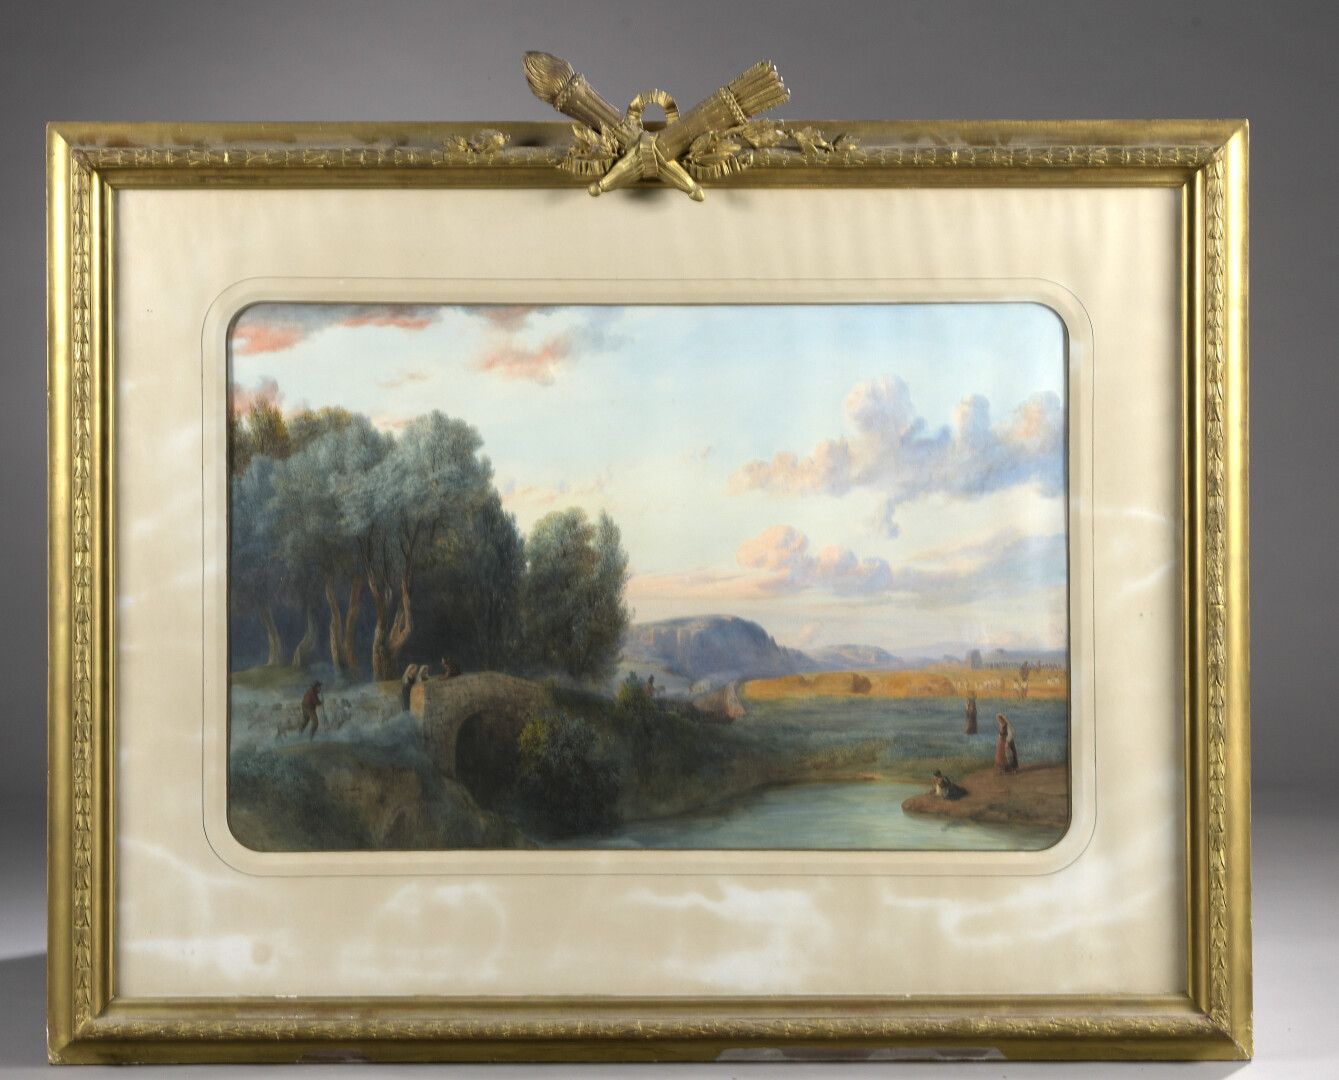 Null 皮埃尔-吉拉尔 (1806-1872)

罗马乡村的景色

水彩画。

左下方有签名和1865年的日期。

60 x 95 cm at sight

&hellip;